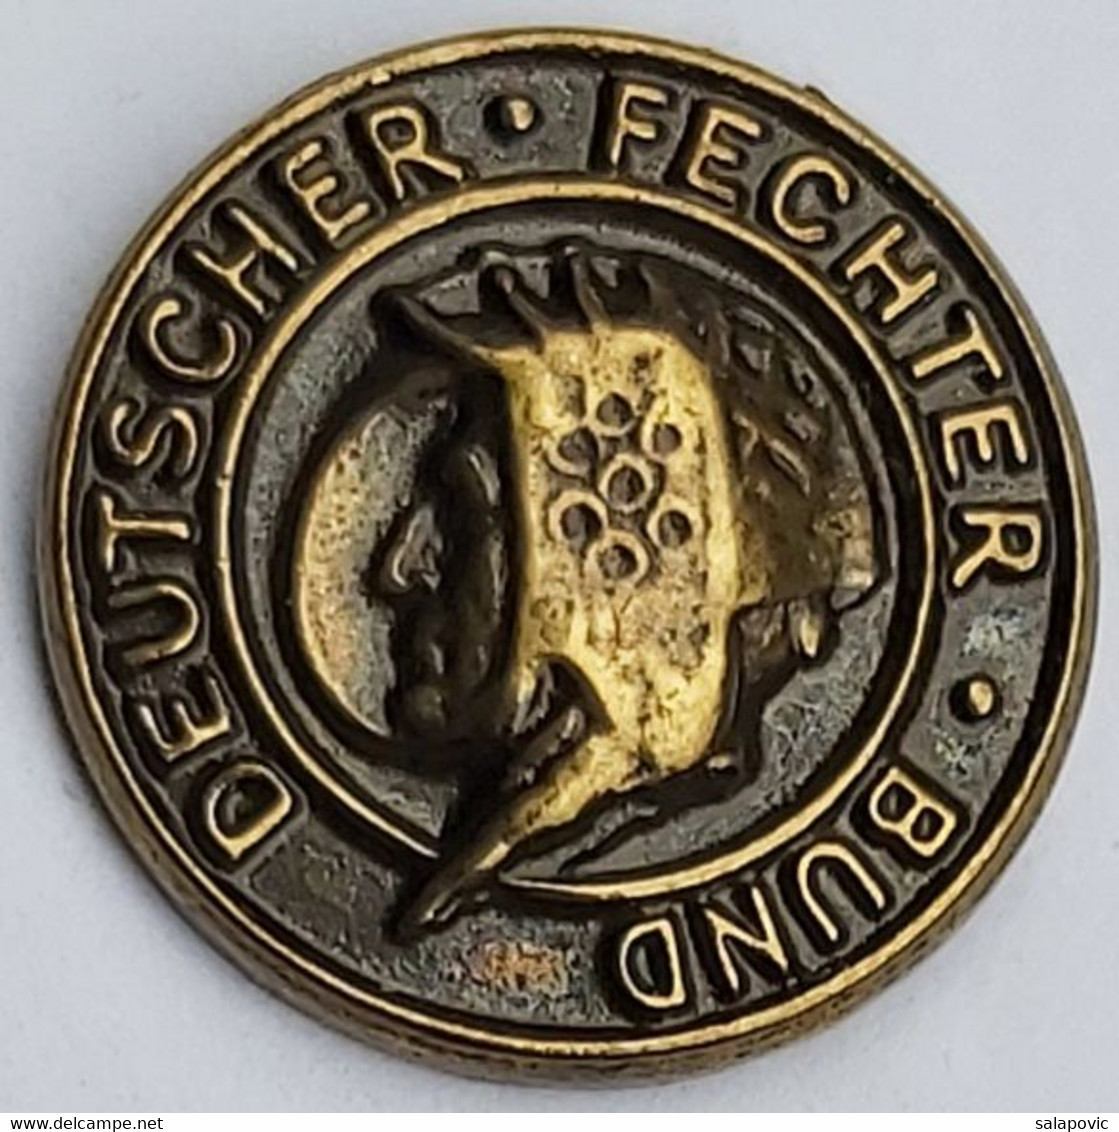 Deutsche Fechter-Bund Germany Fencing Federation Association Union PINS A10/10 - Schermen